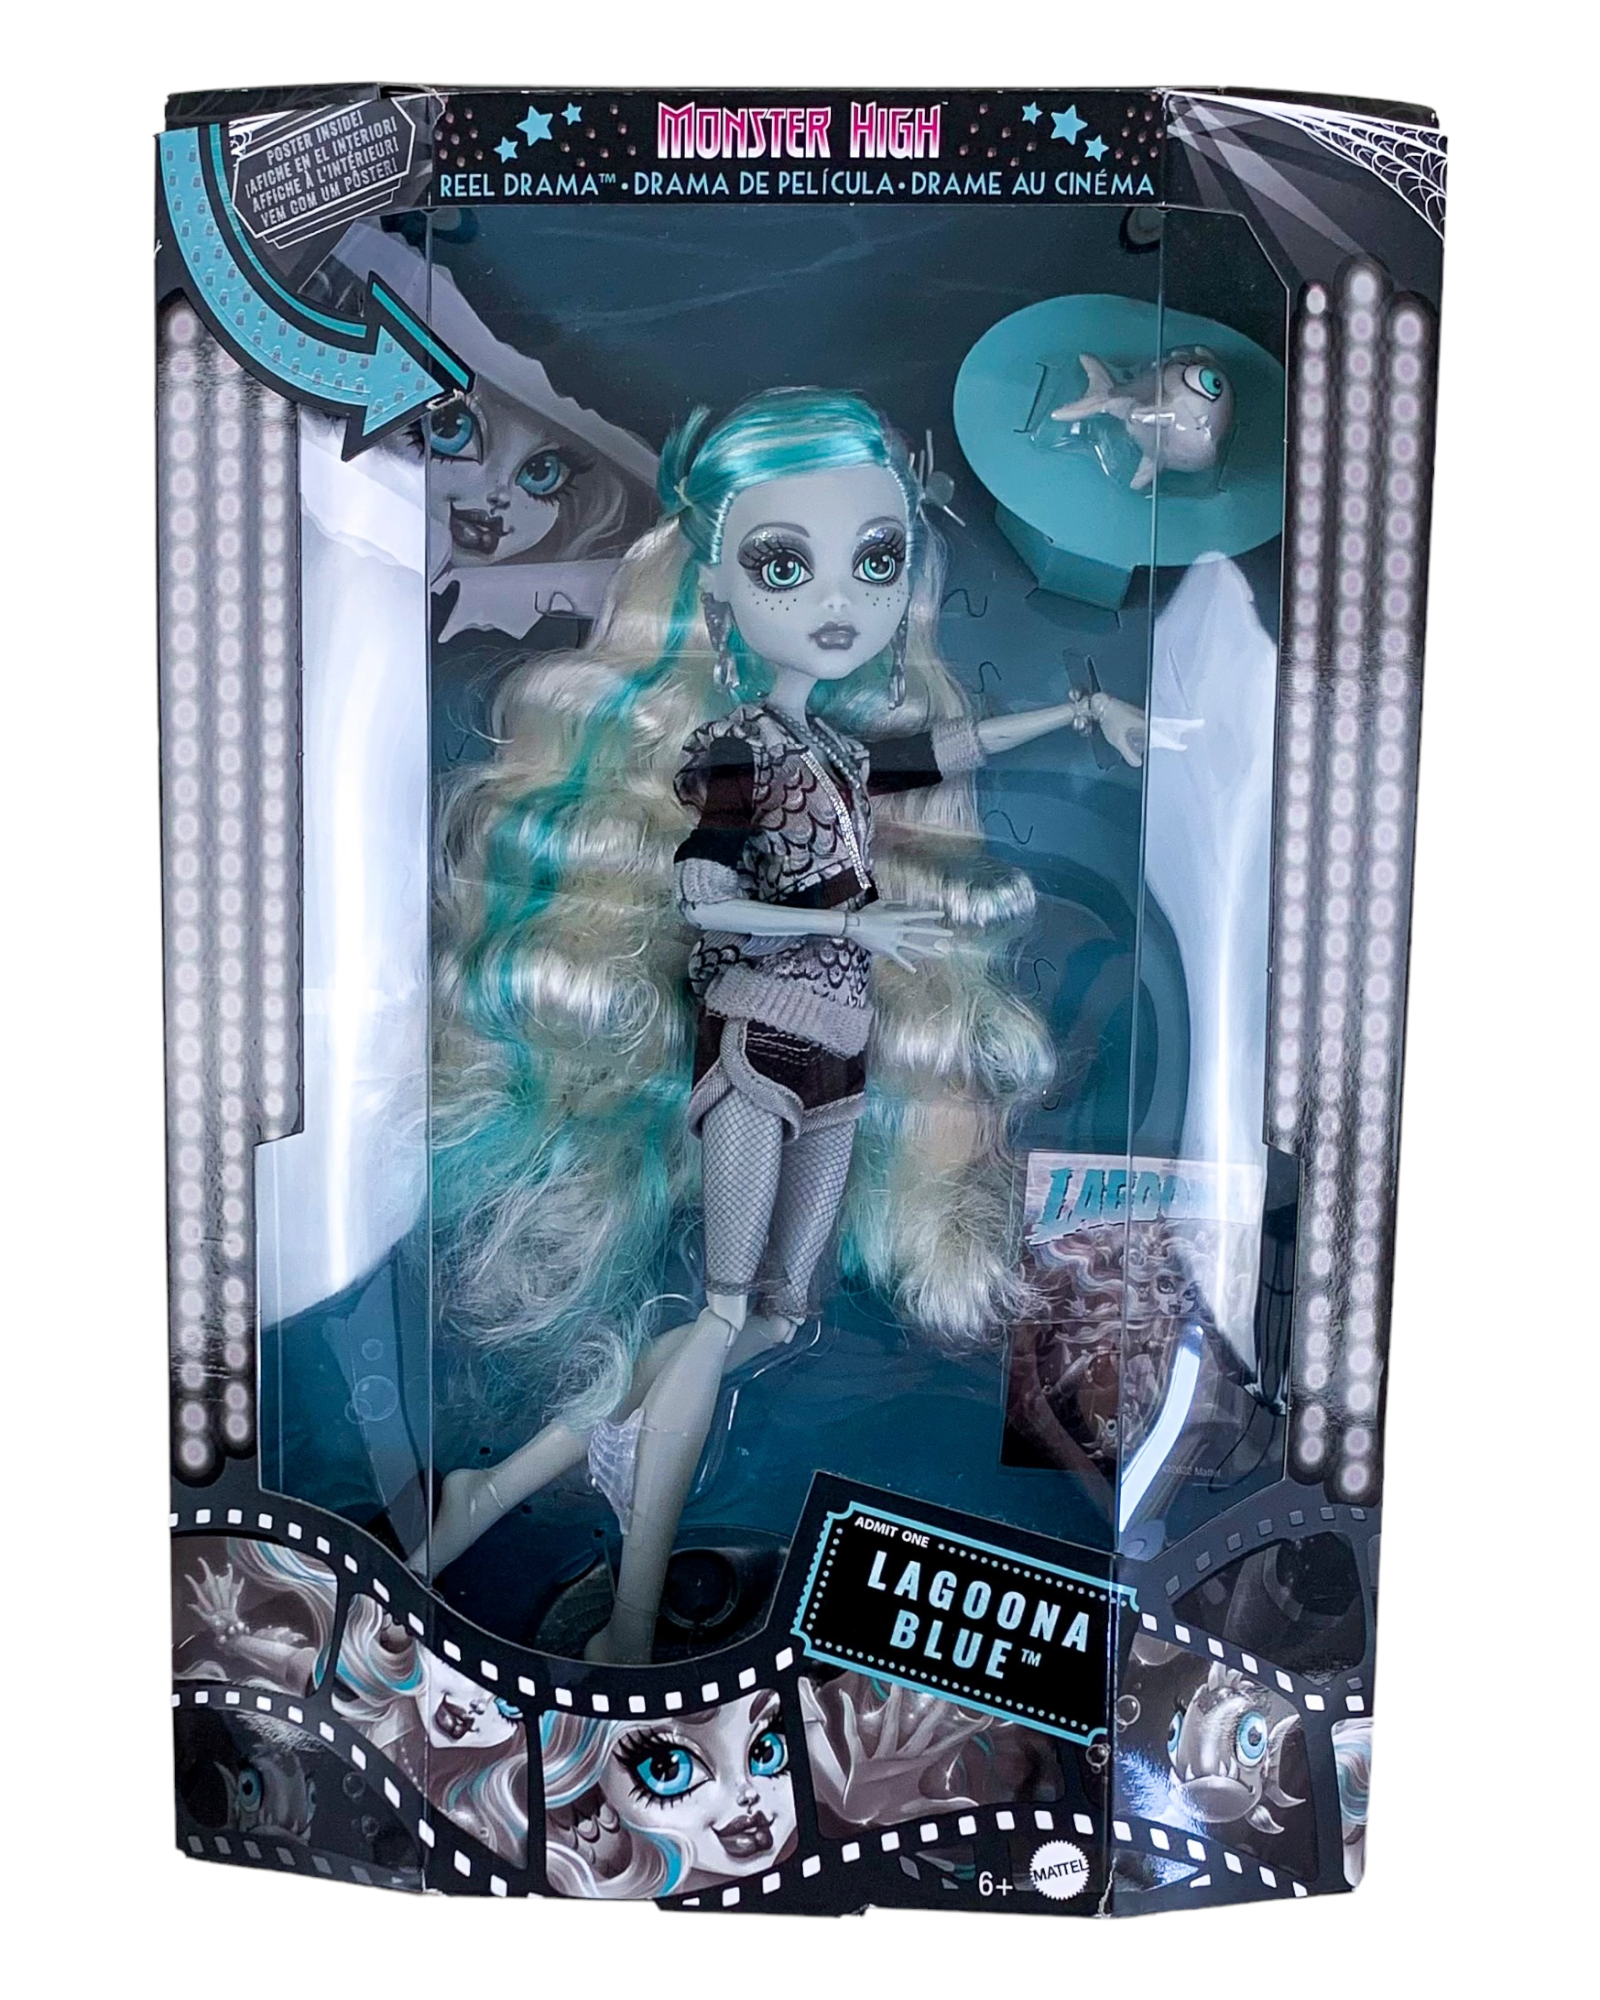 Monster High Reel Drama Lagoona Blue  Monster high dolls, Monster high  doll clothes, Monster high